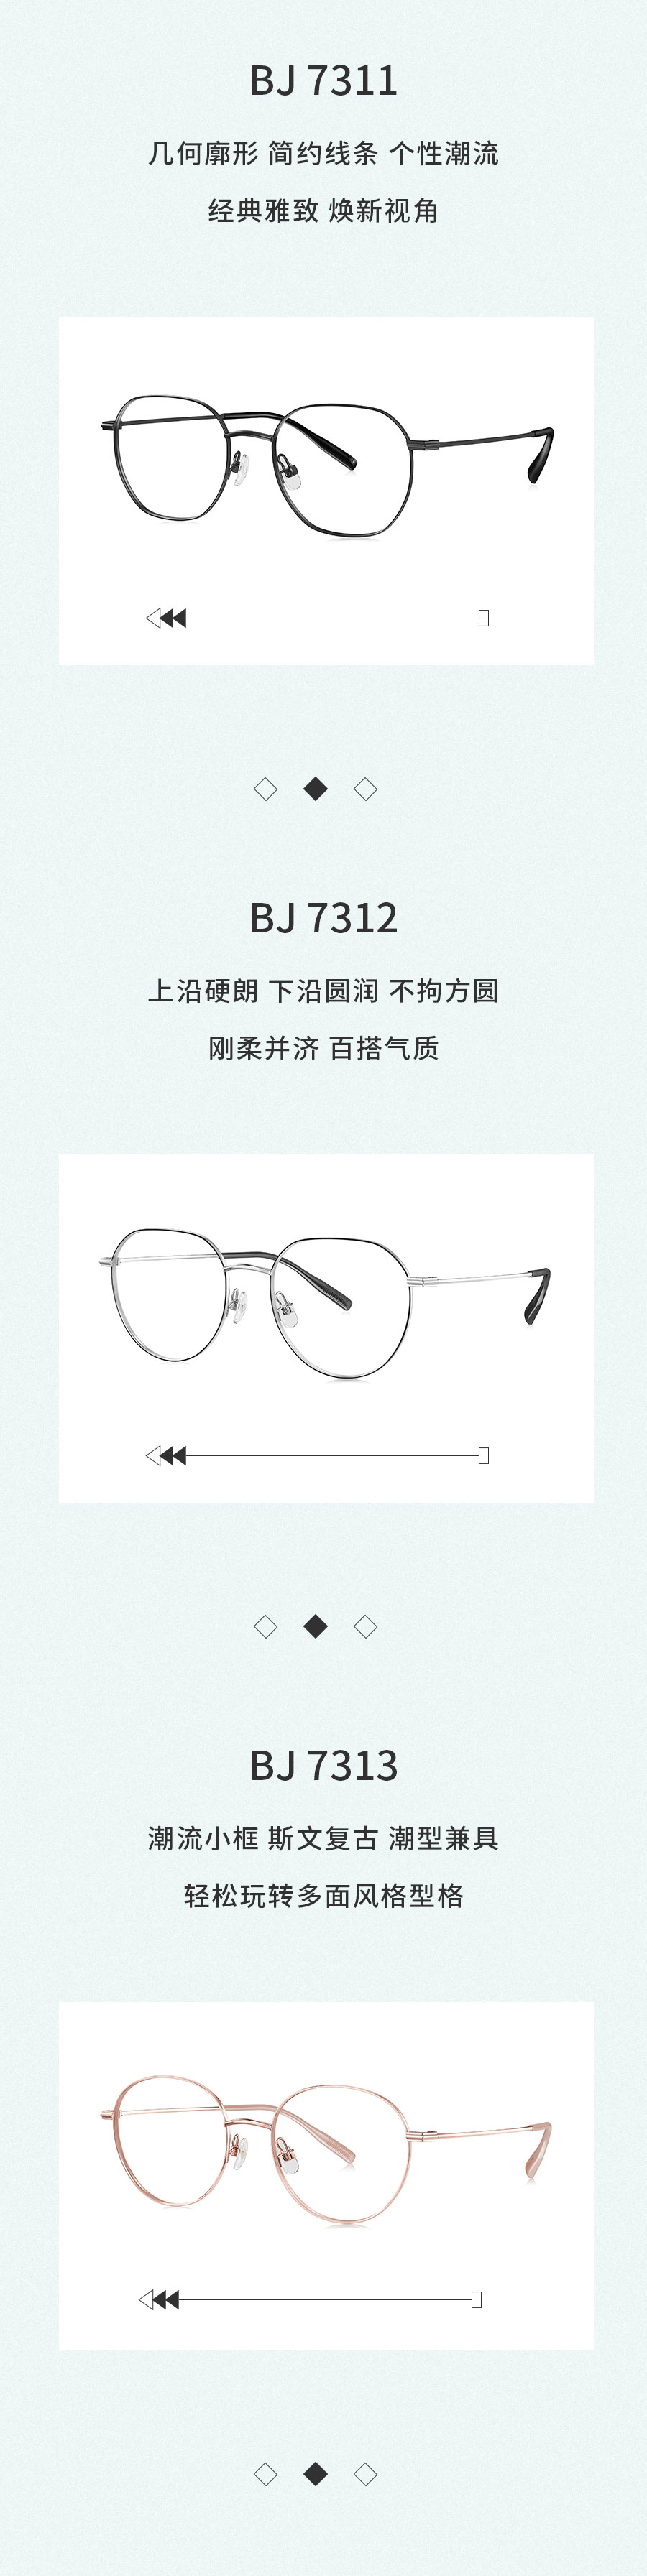 广信眼镜×BOLON暴龙联名款王俊凯同款多边形框光学镜架BJ7311